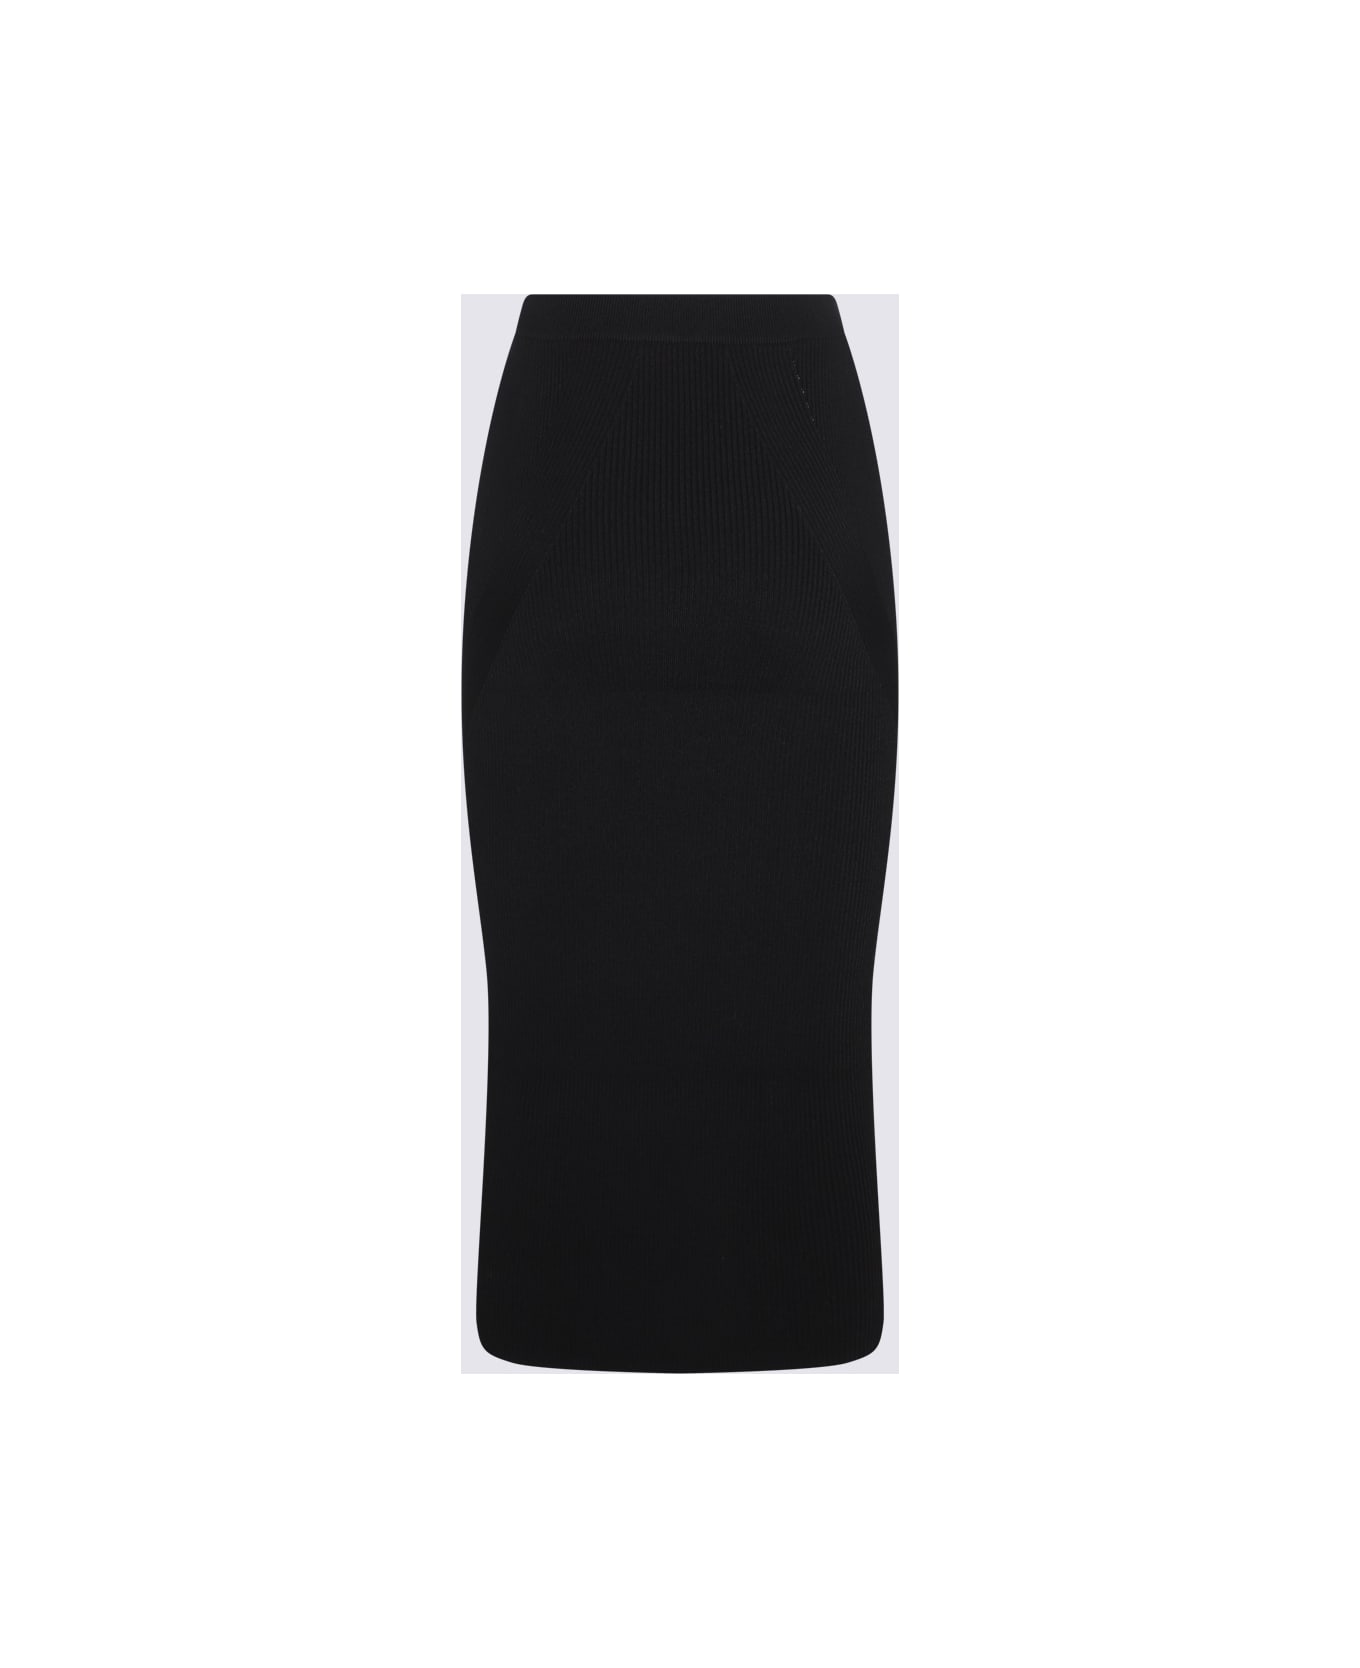 Alexander McQueen Black Wool Blend Skirt - Black